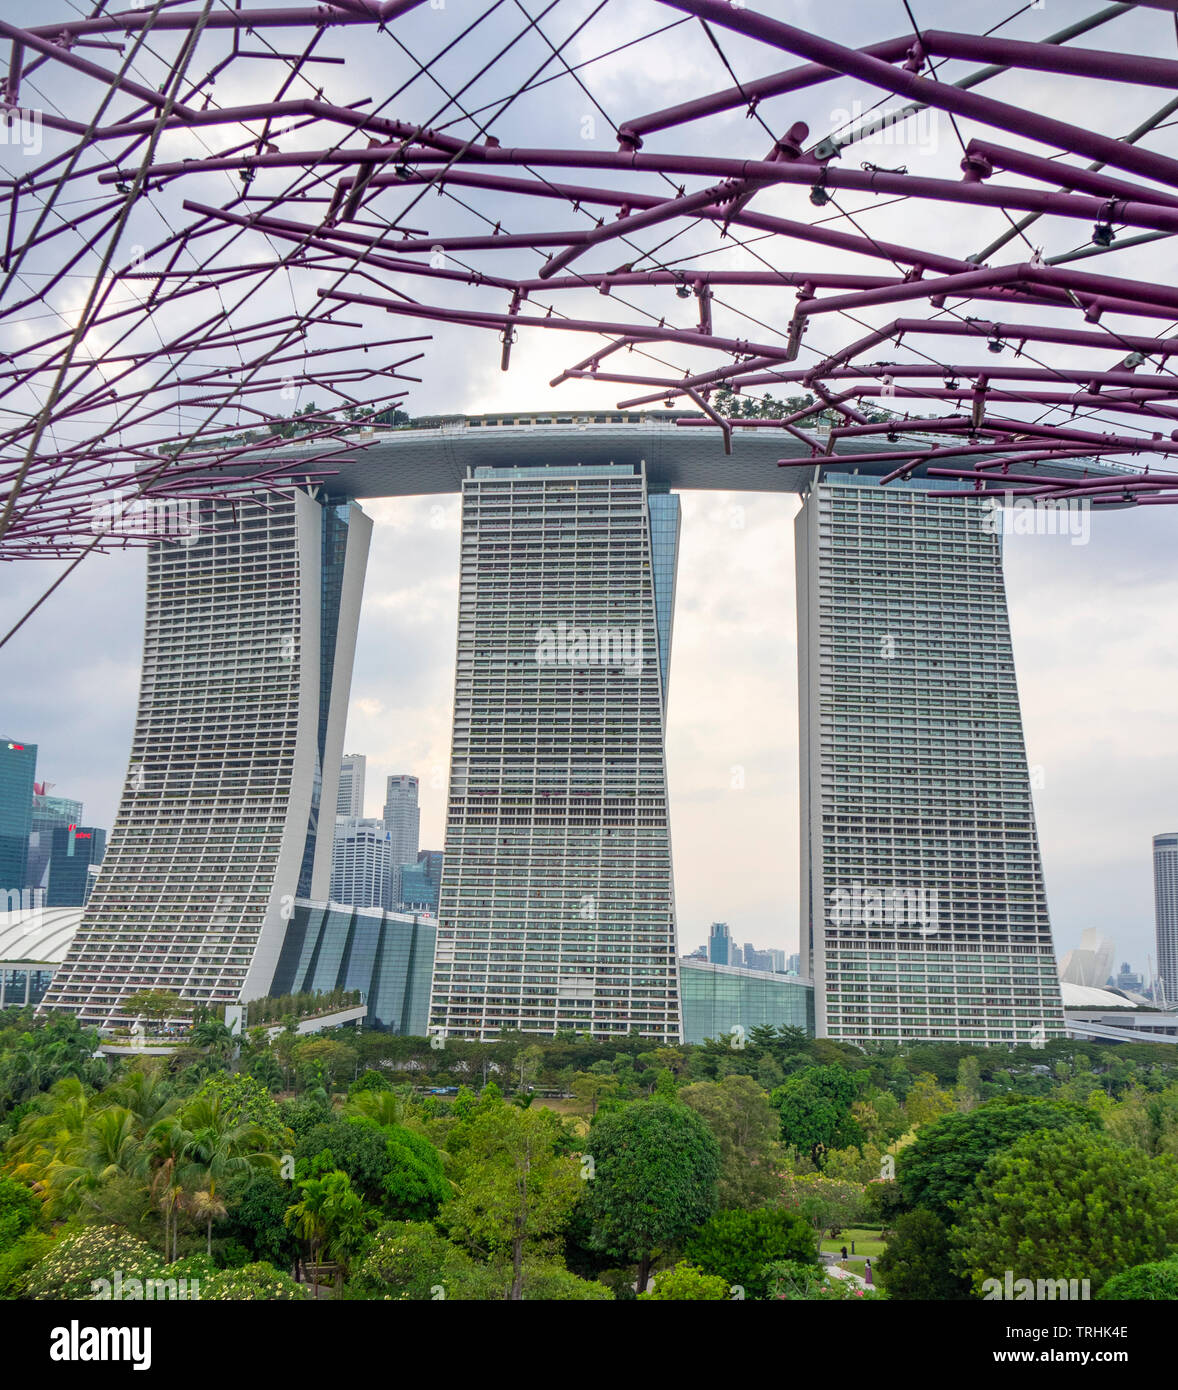 Marina Bay Sands Hotel und Resort mit Swimmingpool auf der Dachterrasse und Stahl gitterkonstruktion Supertreees an Gärten an der Bucht von Singapur Stockfoto